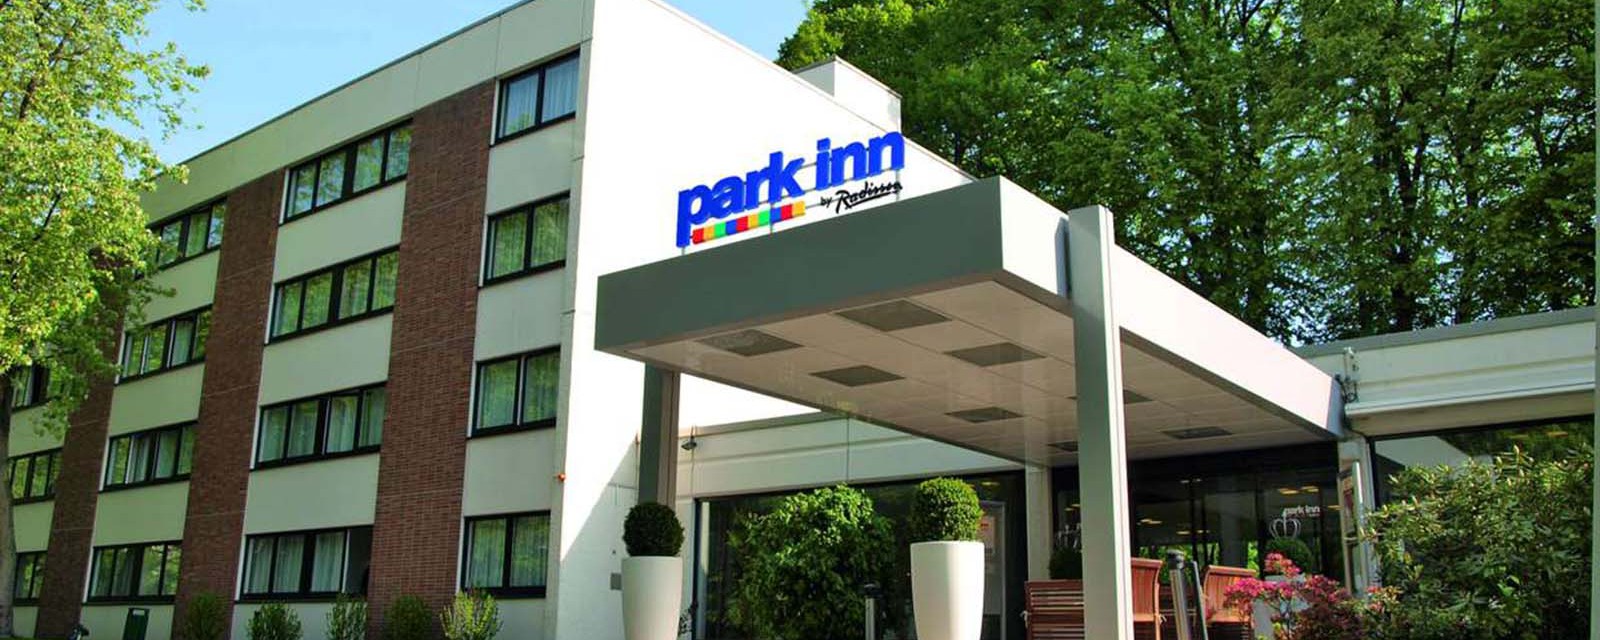 Park Inn by Radisson Bielefeld Hotel Vorfahrt